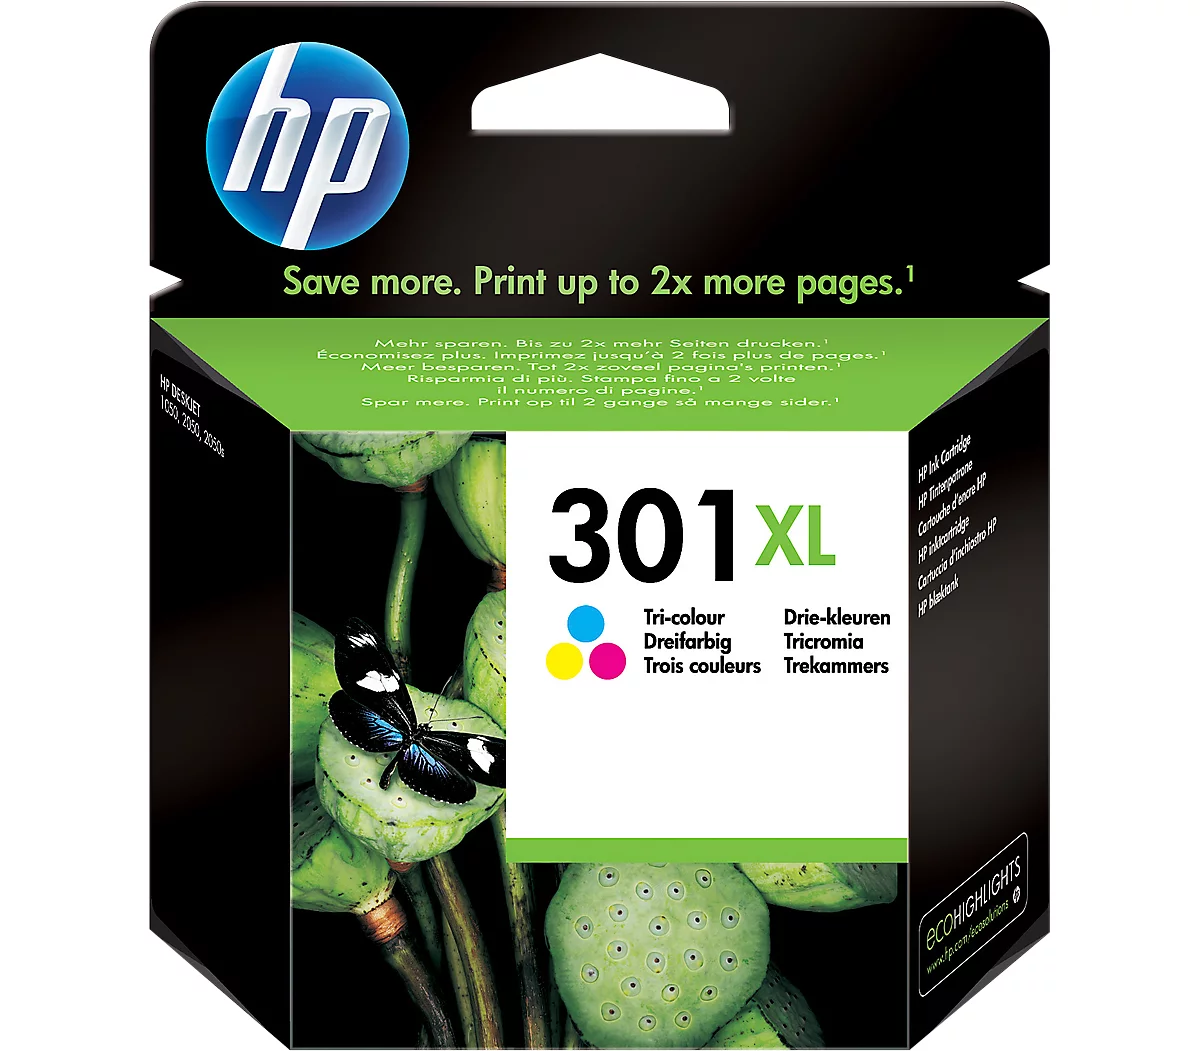 Cartouche d'encre HP 963XL Noir et couleur, Lot de 4 cartouches  compatibles. Remplace la série HP 963XL GRANDE CAPACITE